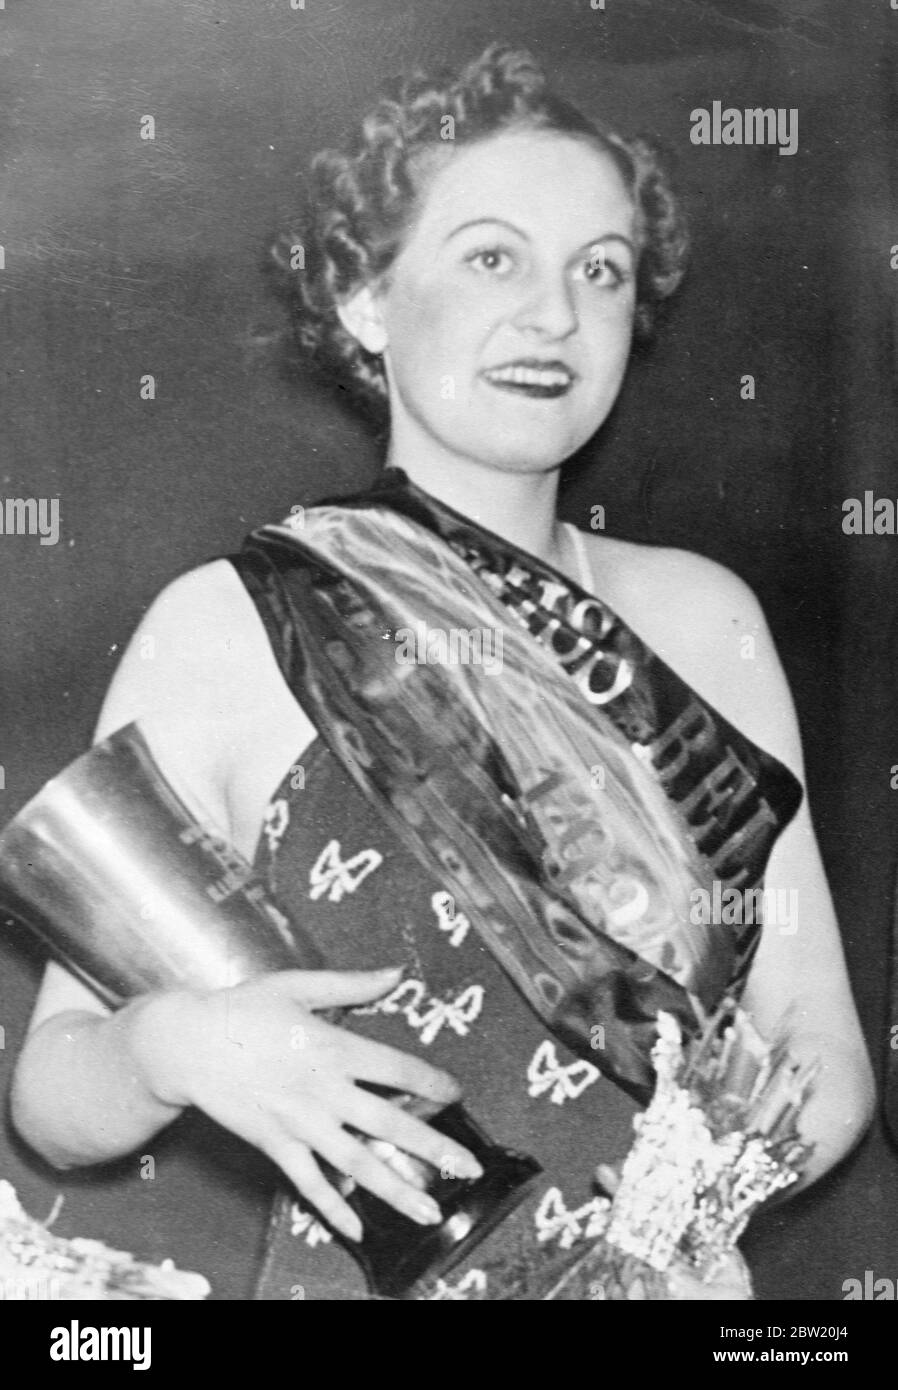 Obwohl erst 18 1/2 Jahre alte Miss Josee Decoeur nach einem landesweiten Wettbewerb zur Miss Belgien 1937 in Brüssel gewählt wurde. 11 Juli 1937 Stockfoto